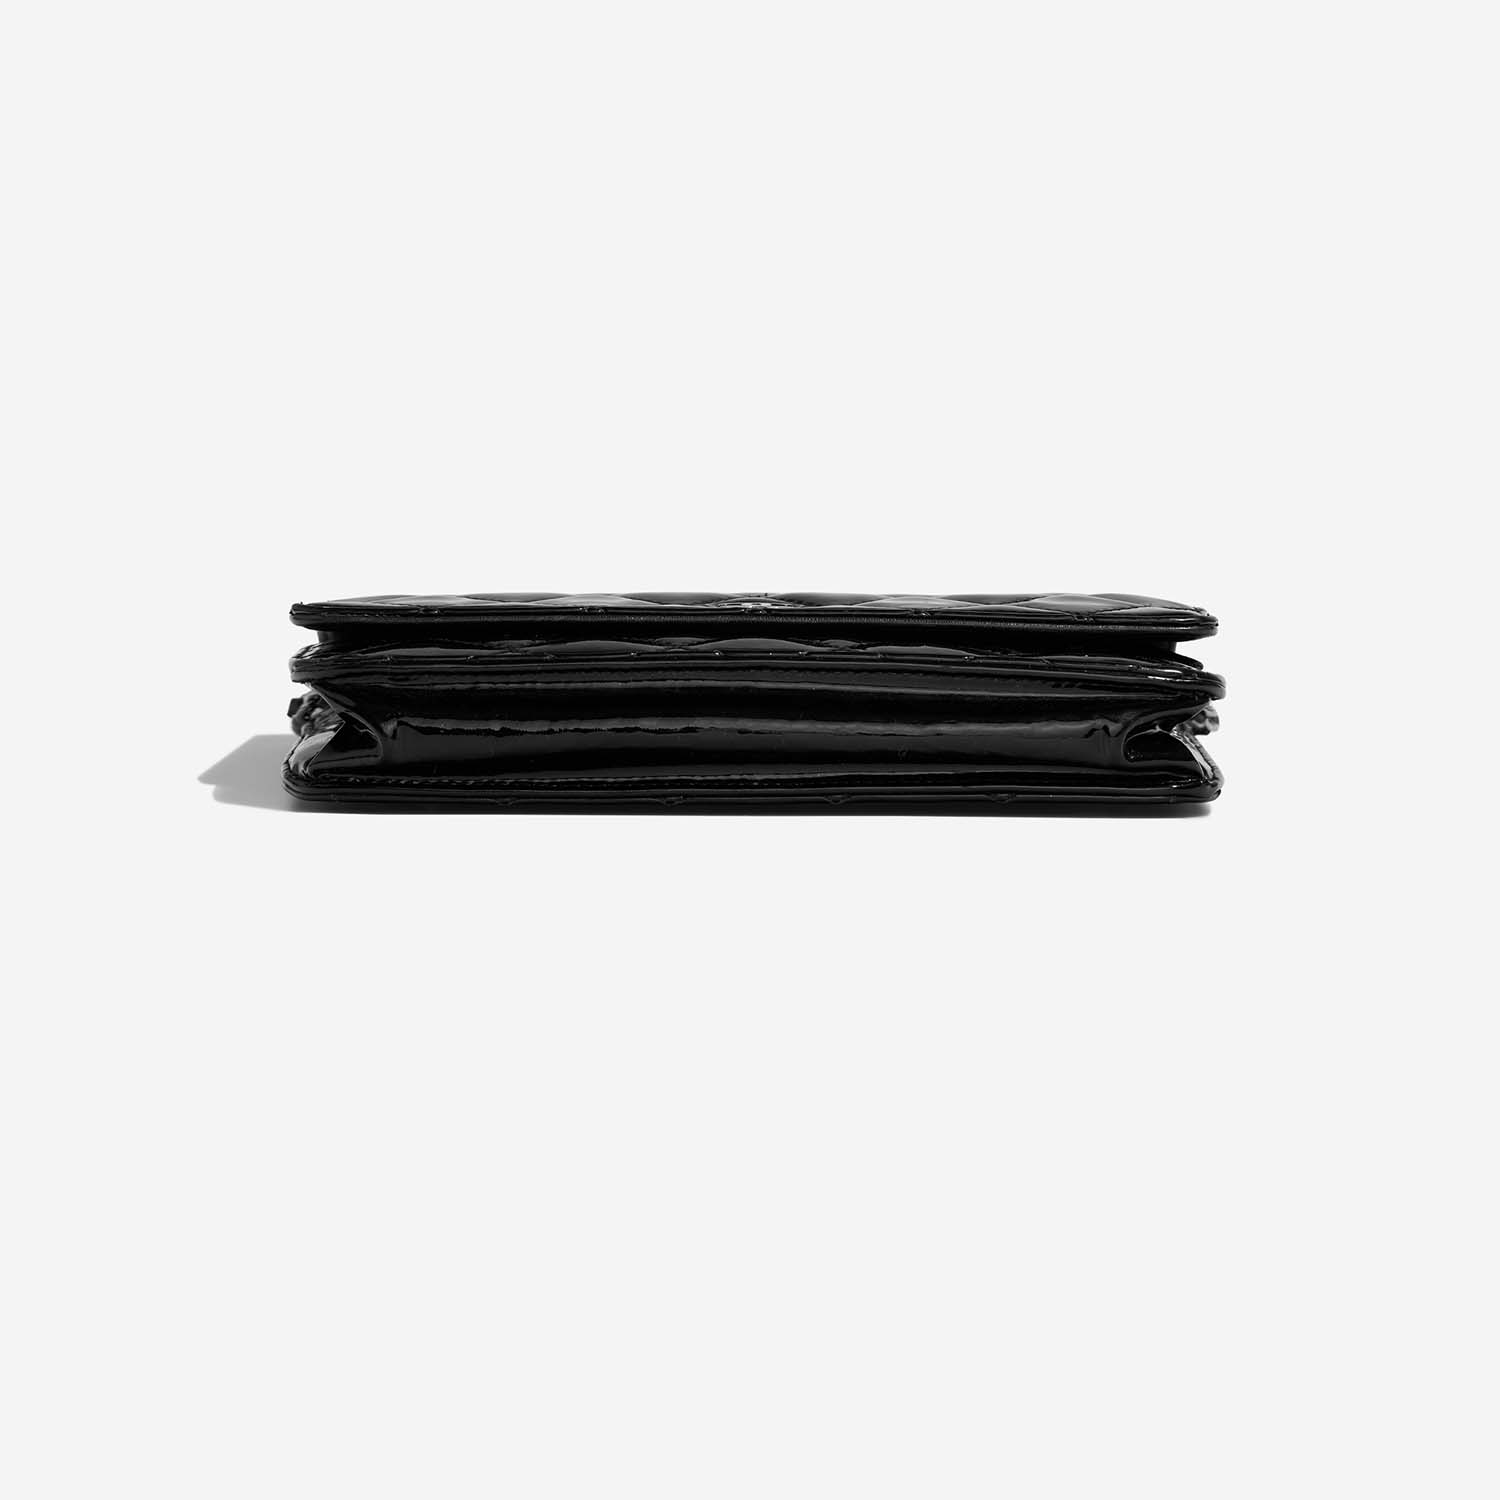 Chanel WOC Black Bottom | Verkaufen Sie Ihre Designer-Tasche auf Saclab.com